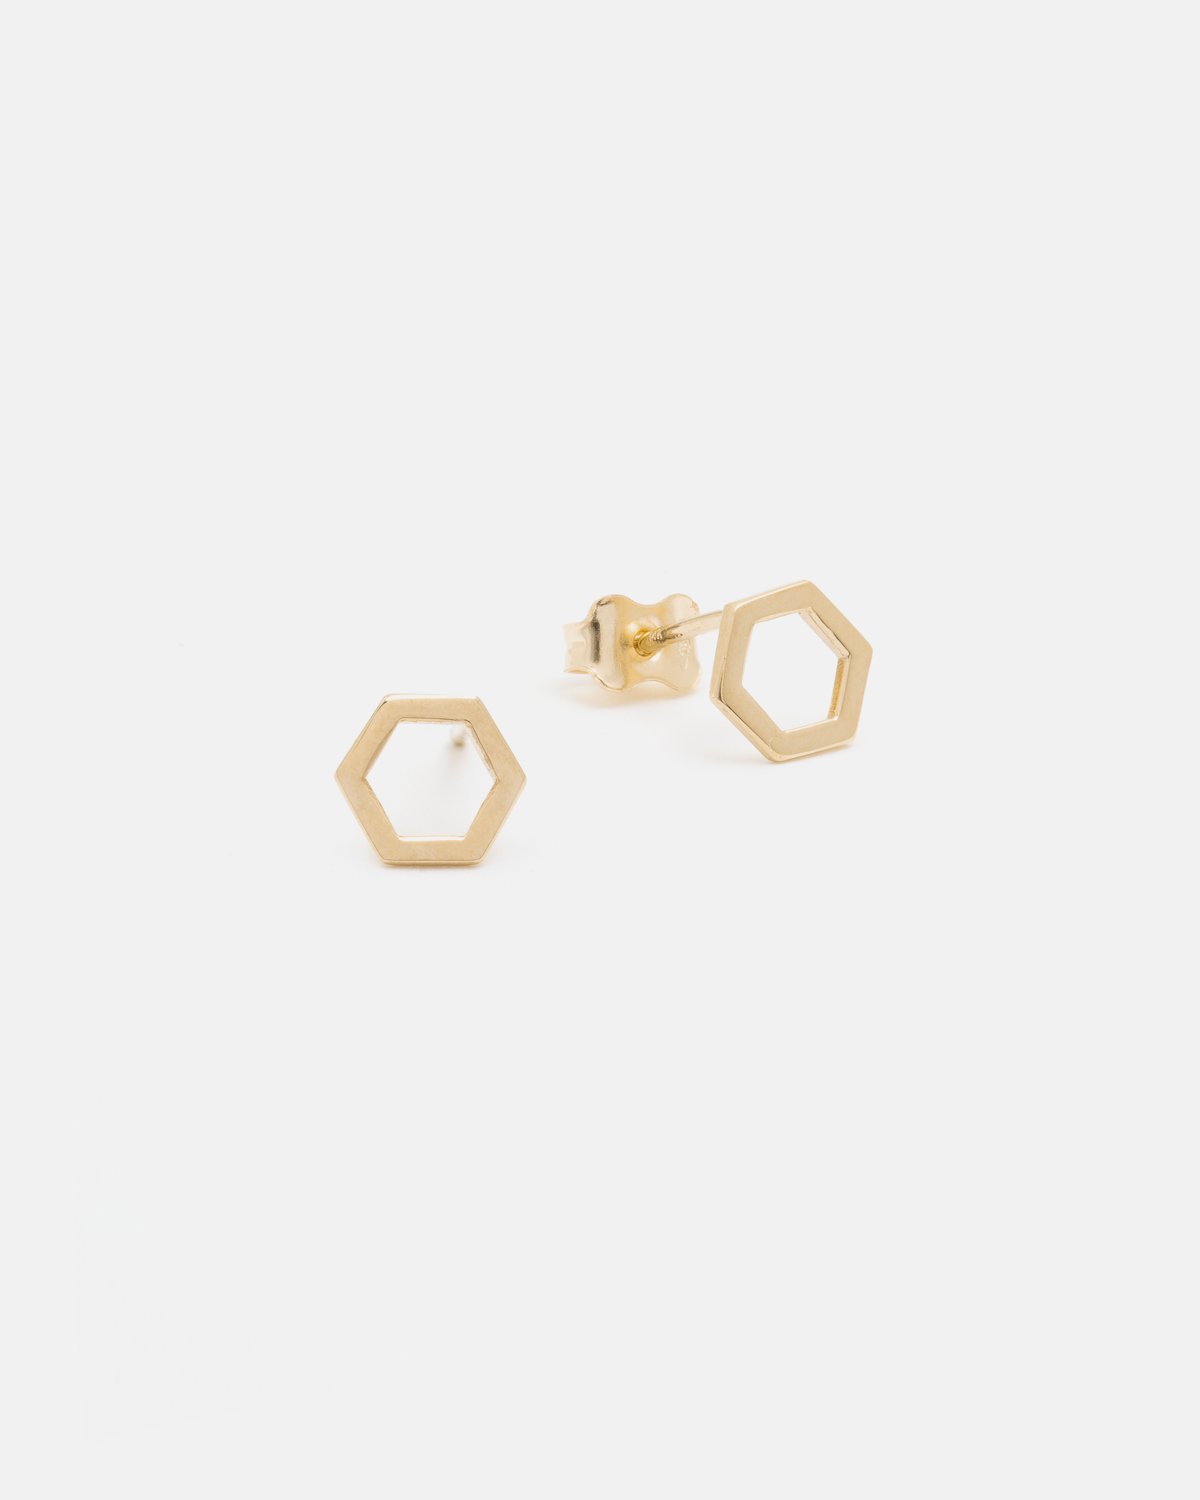 Geo 1  Earrings in 14k Gold